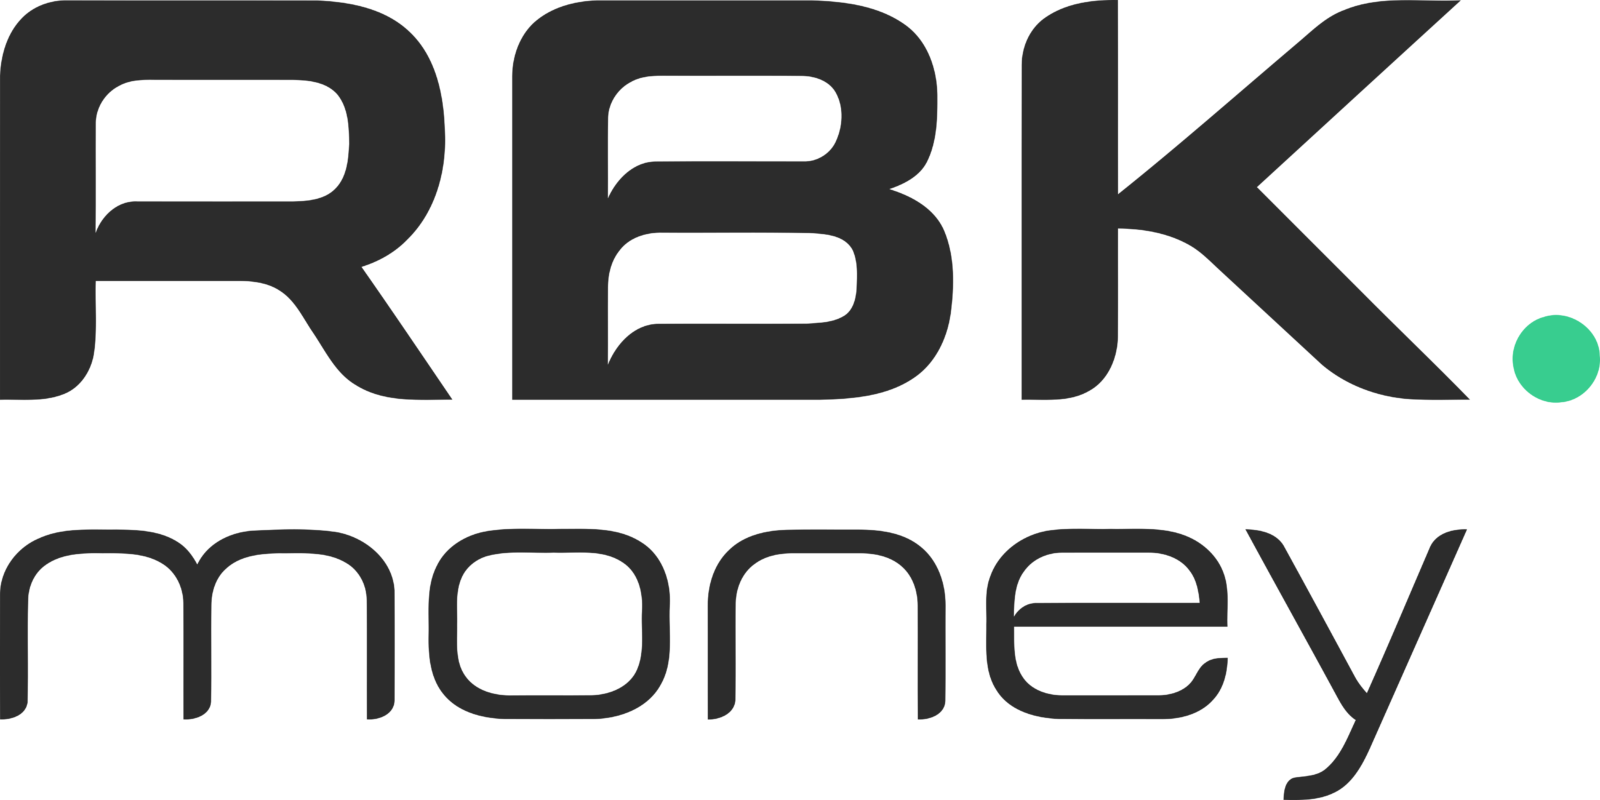 Rbk Logo